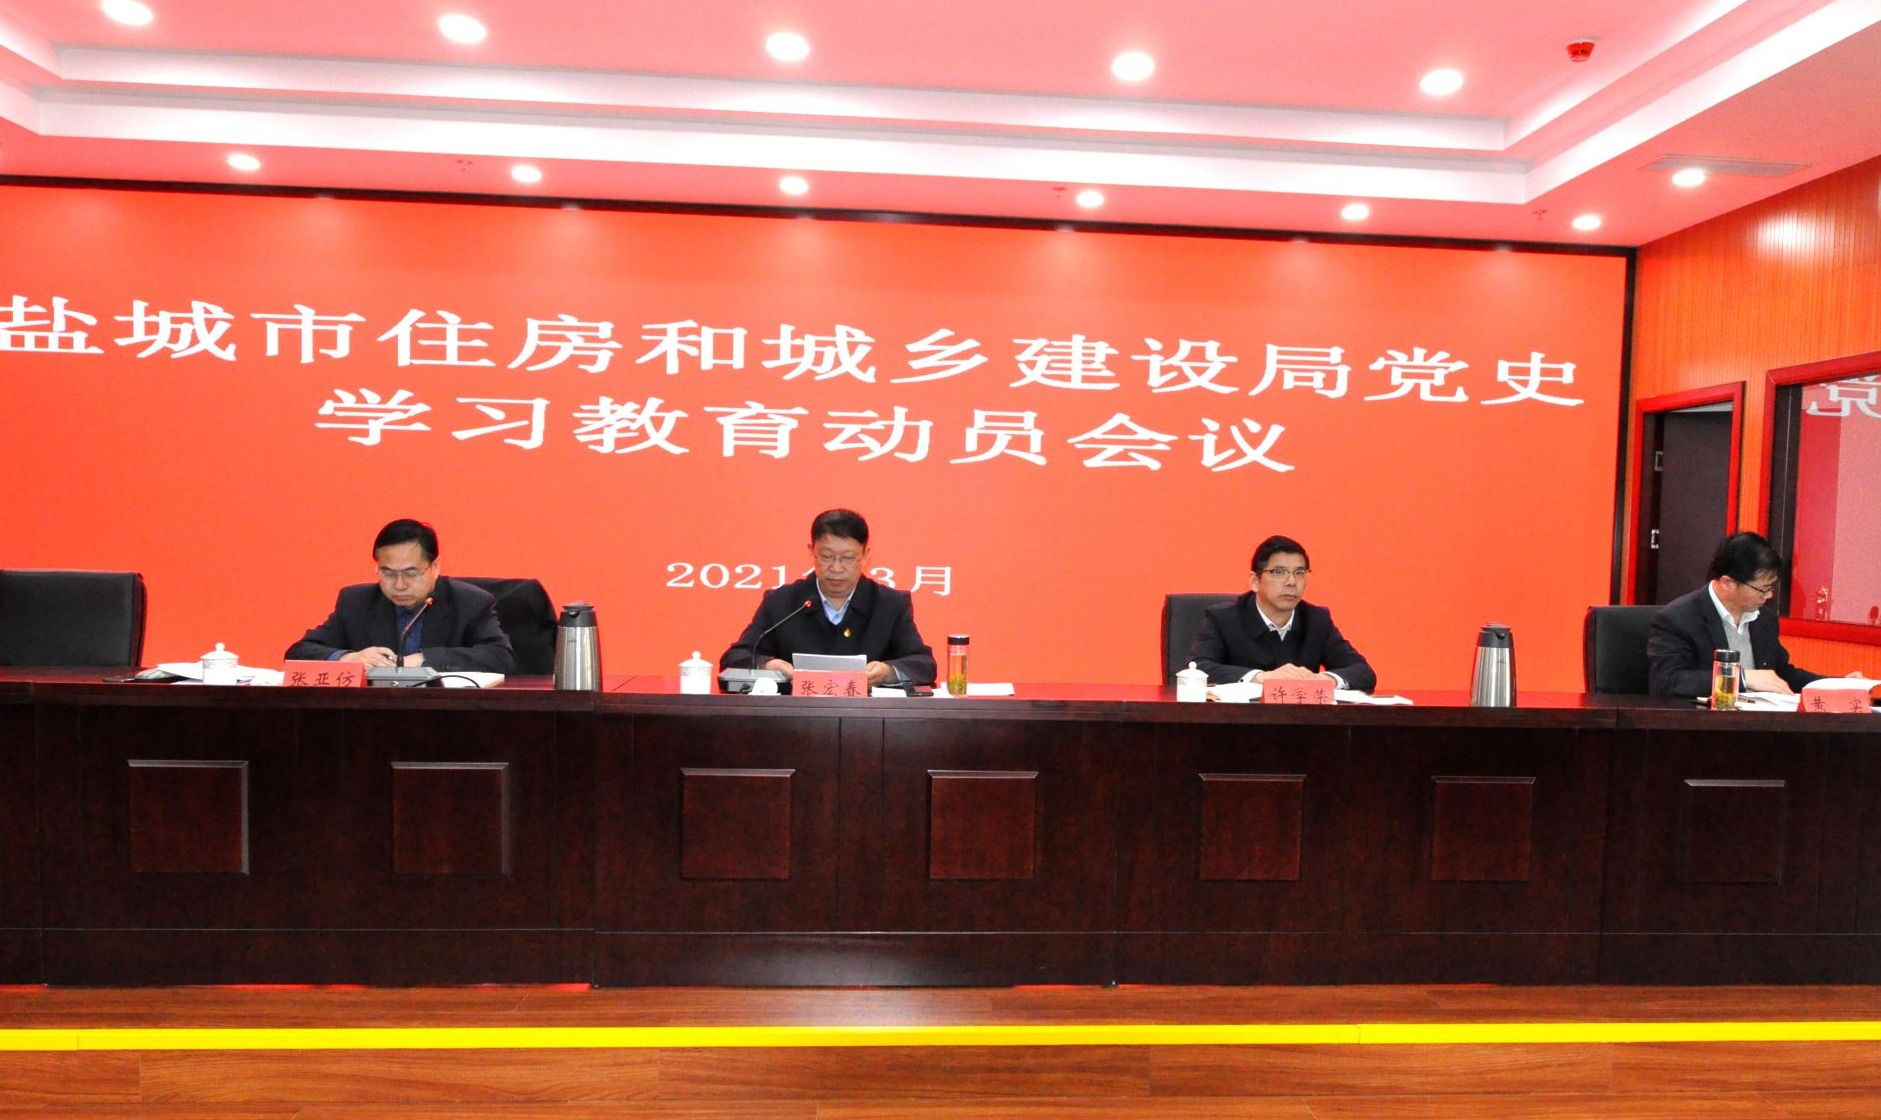 桂林市政府领导到桂林市市场监管局调研指导工作-桂林生活网新闻中心